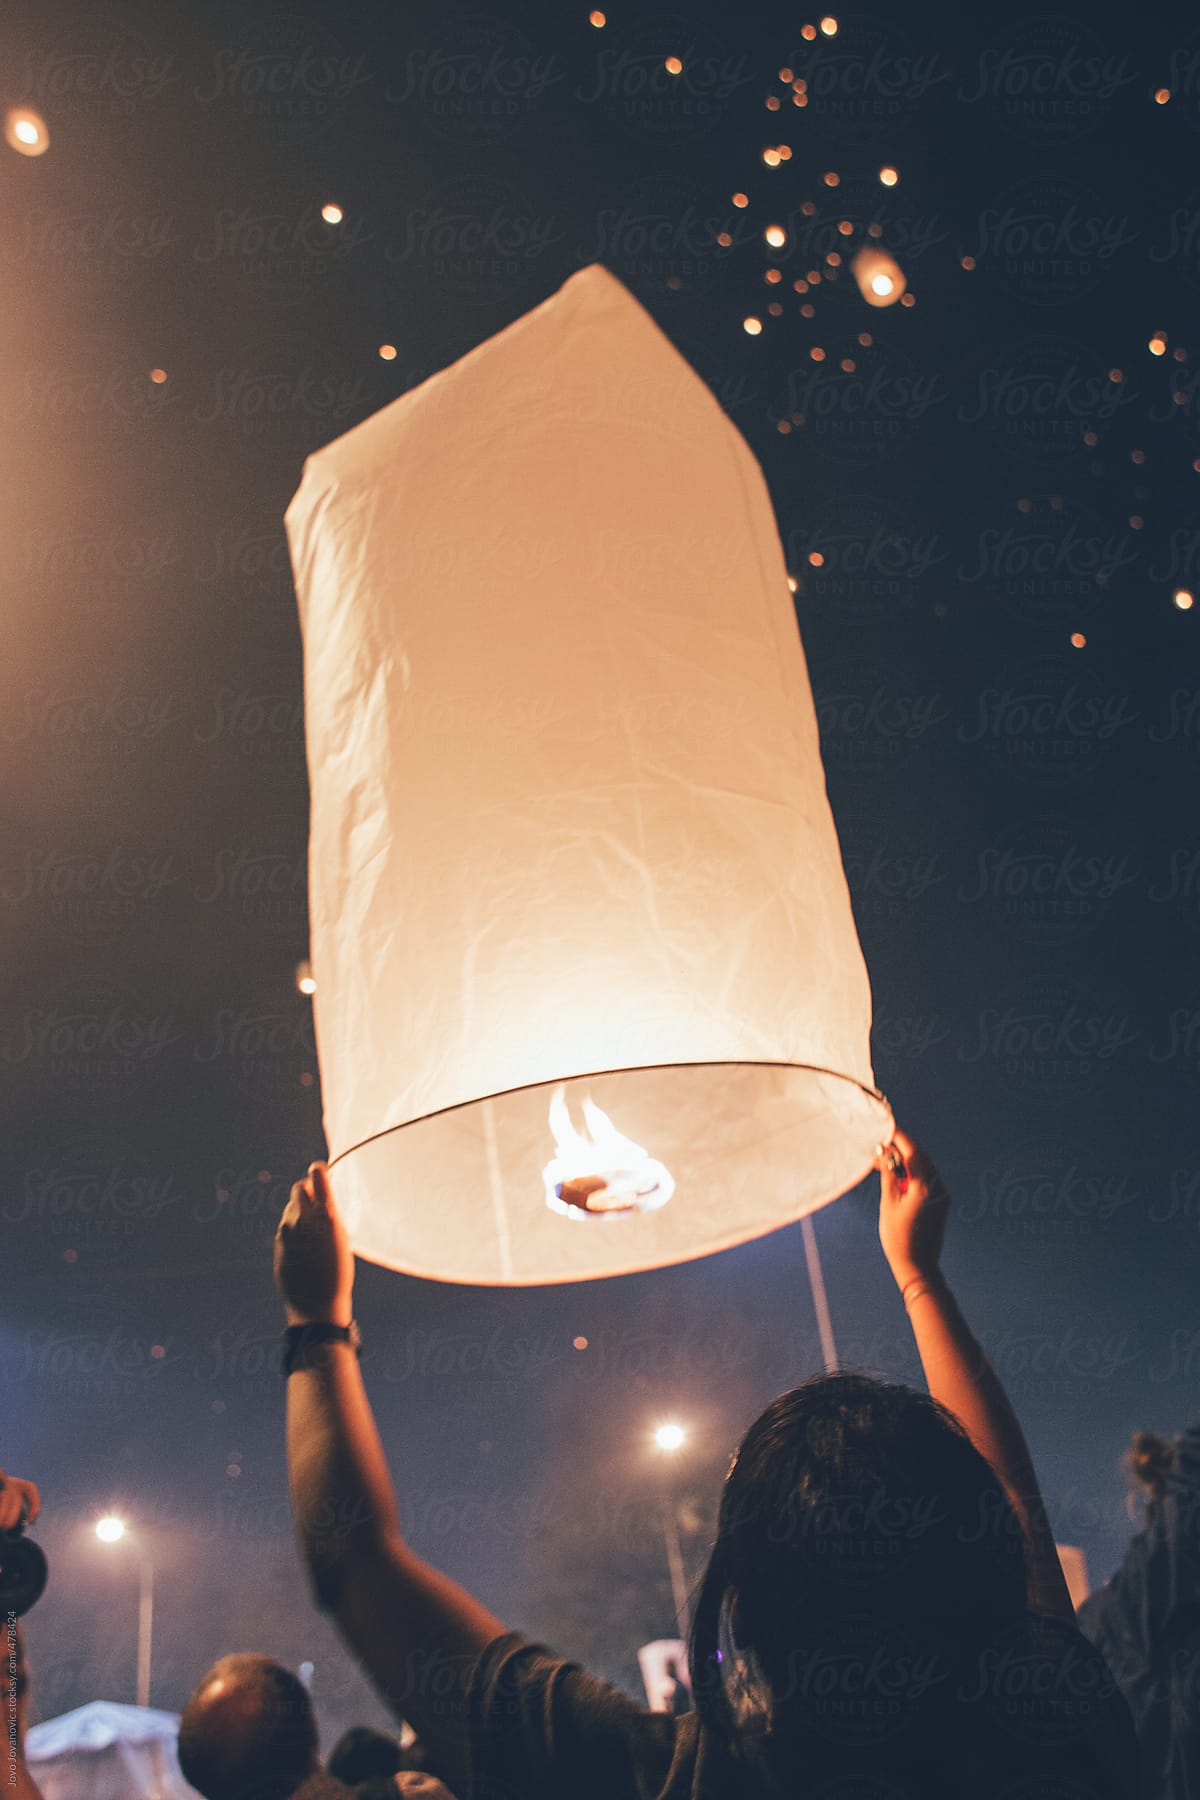 Festival time - woman releasing paper lantern in sky